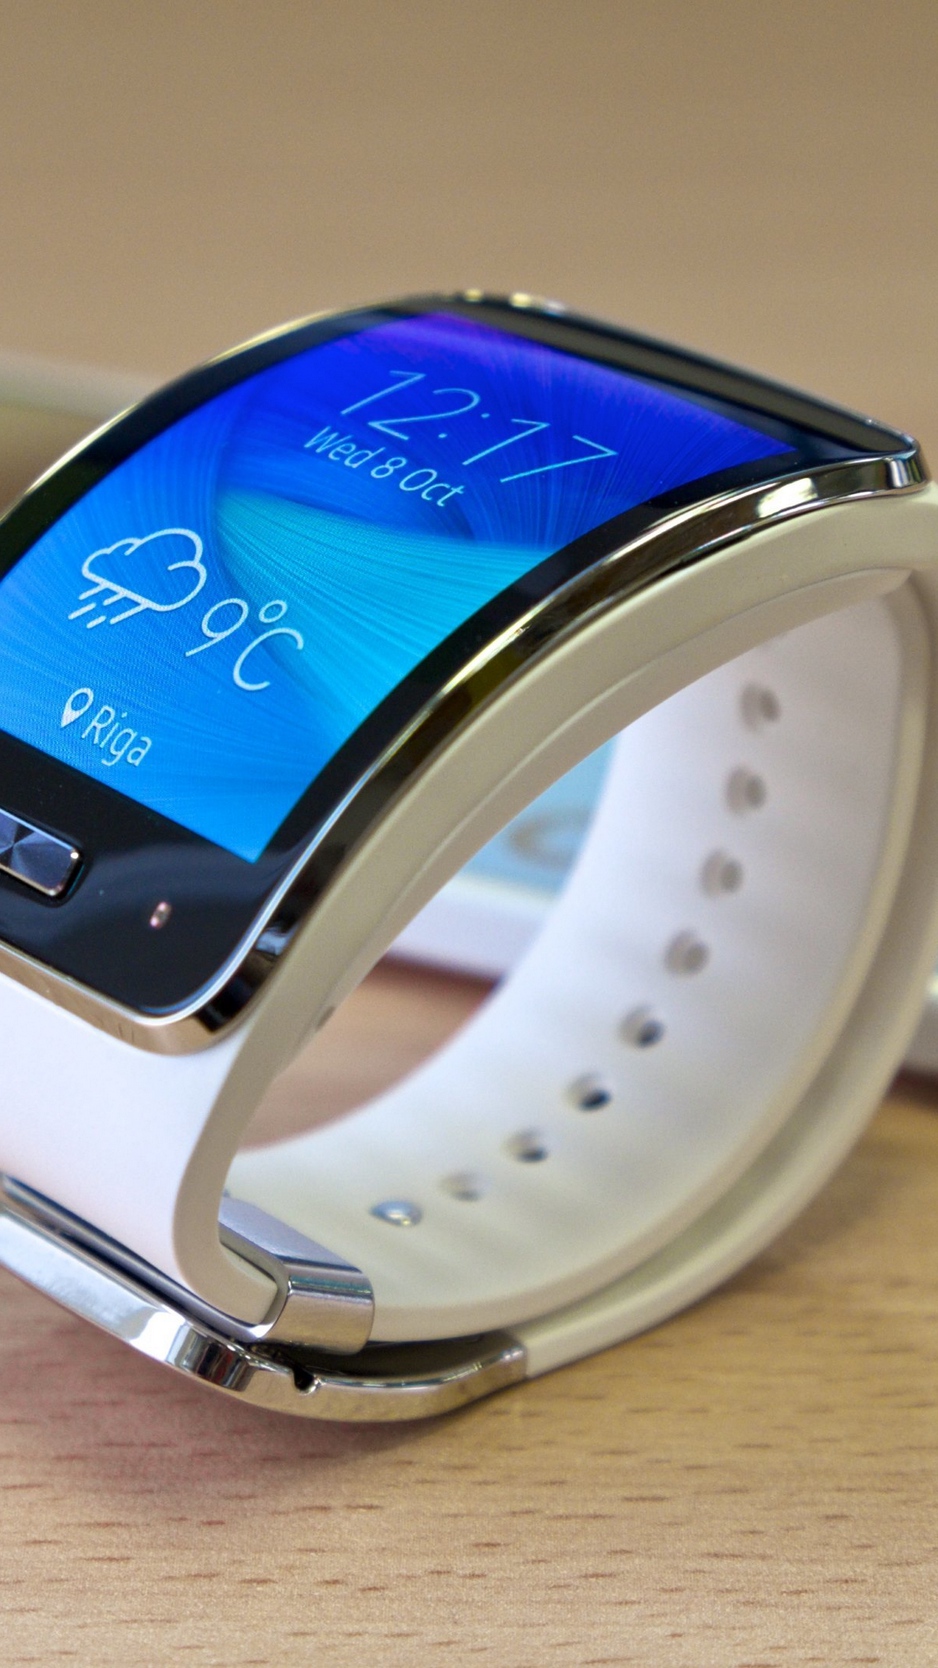 Wallpaper Samsung, Gear S, Samsung Galaxy Note - Smart Watch Hd Samsung - HD Wallpaper 